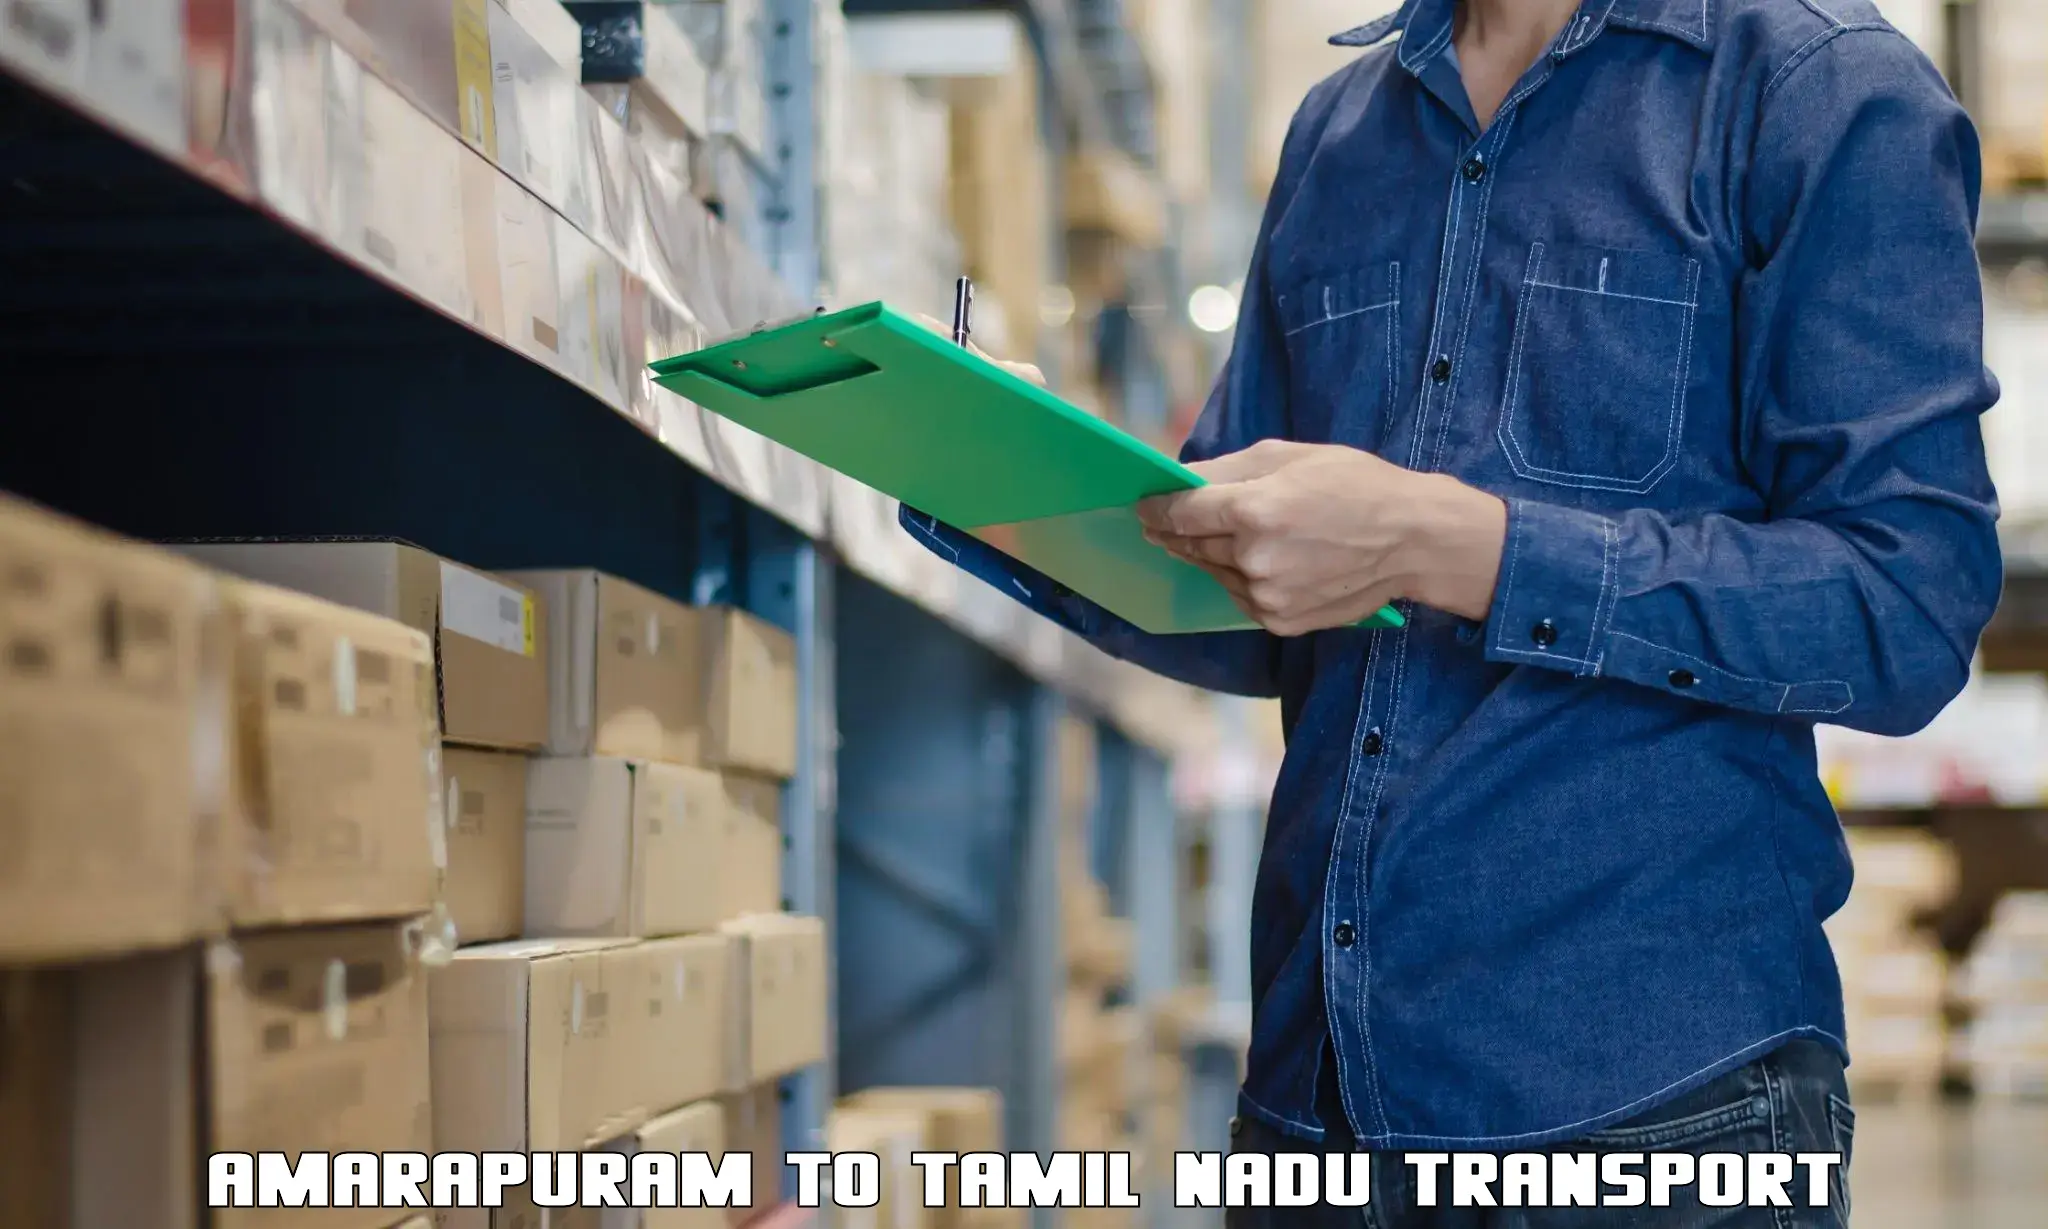 Interstate transport services Amarapuram to Tamil Nadu